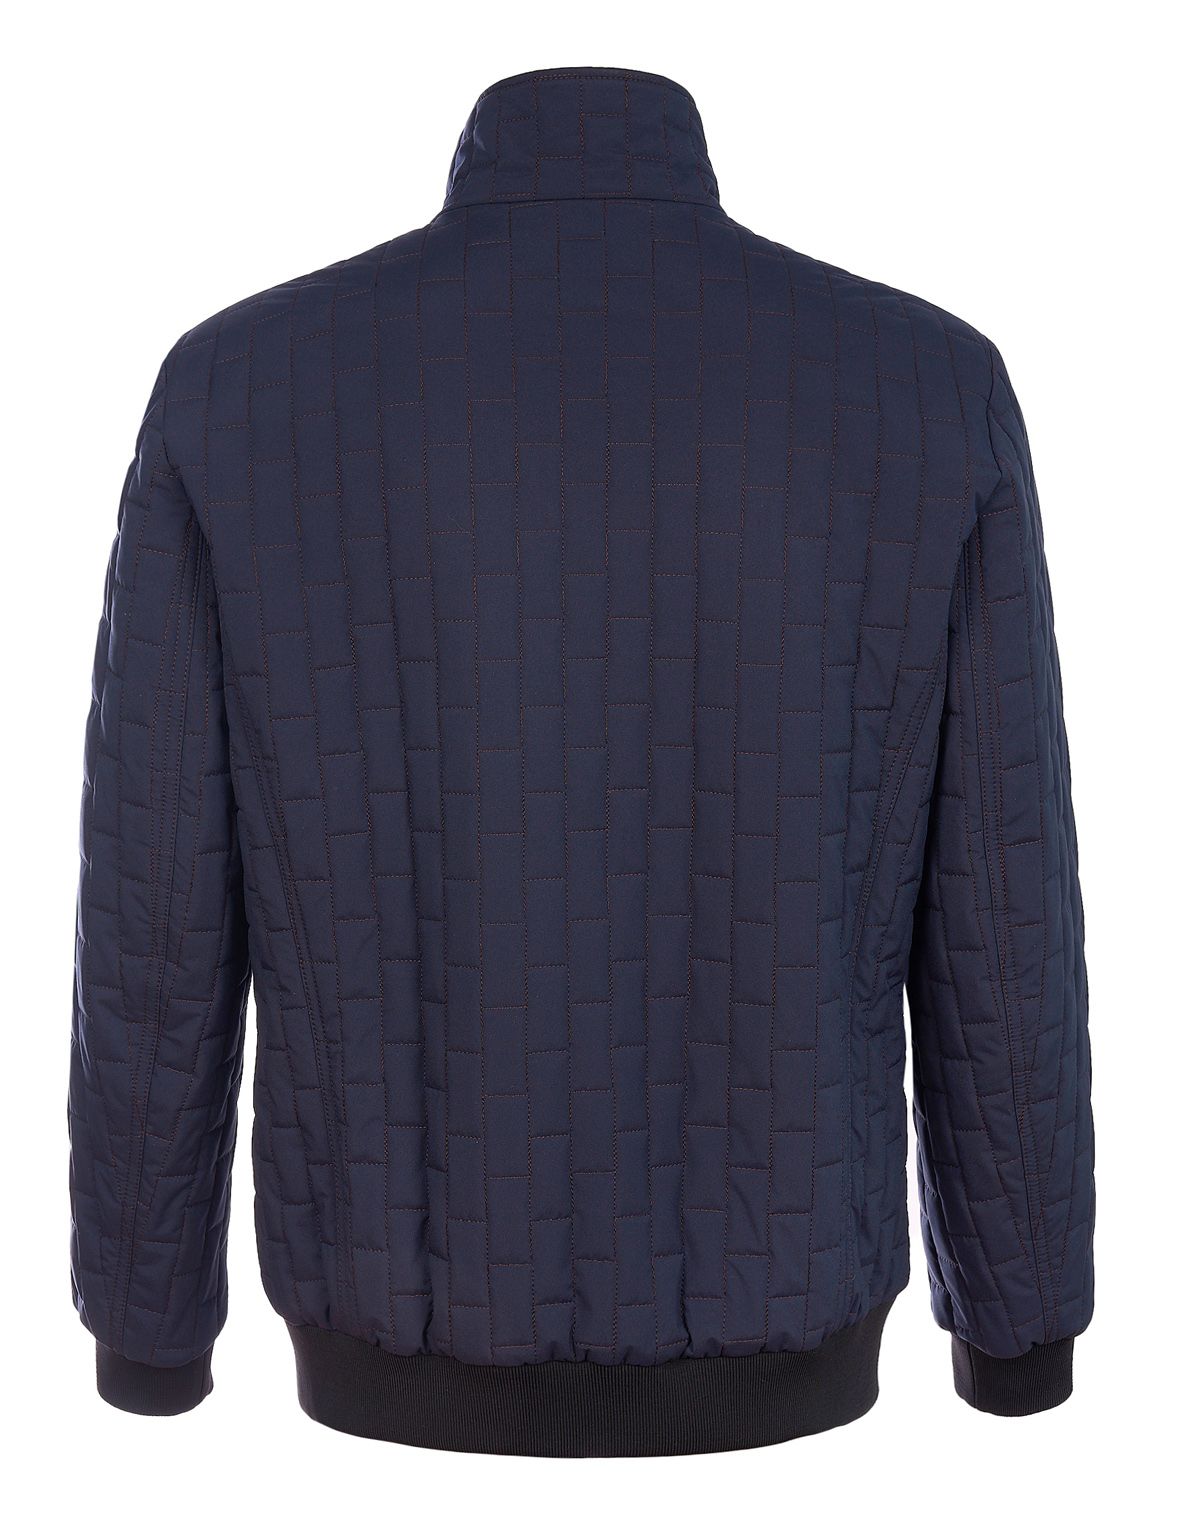 Куртка-бомбер мужская MEUCCI утепленная на молнии | купить в интернет-магазине Olymp-Men